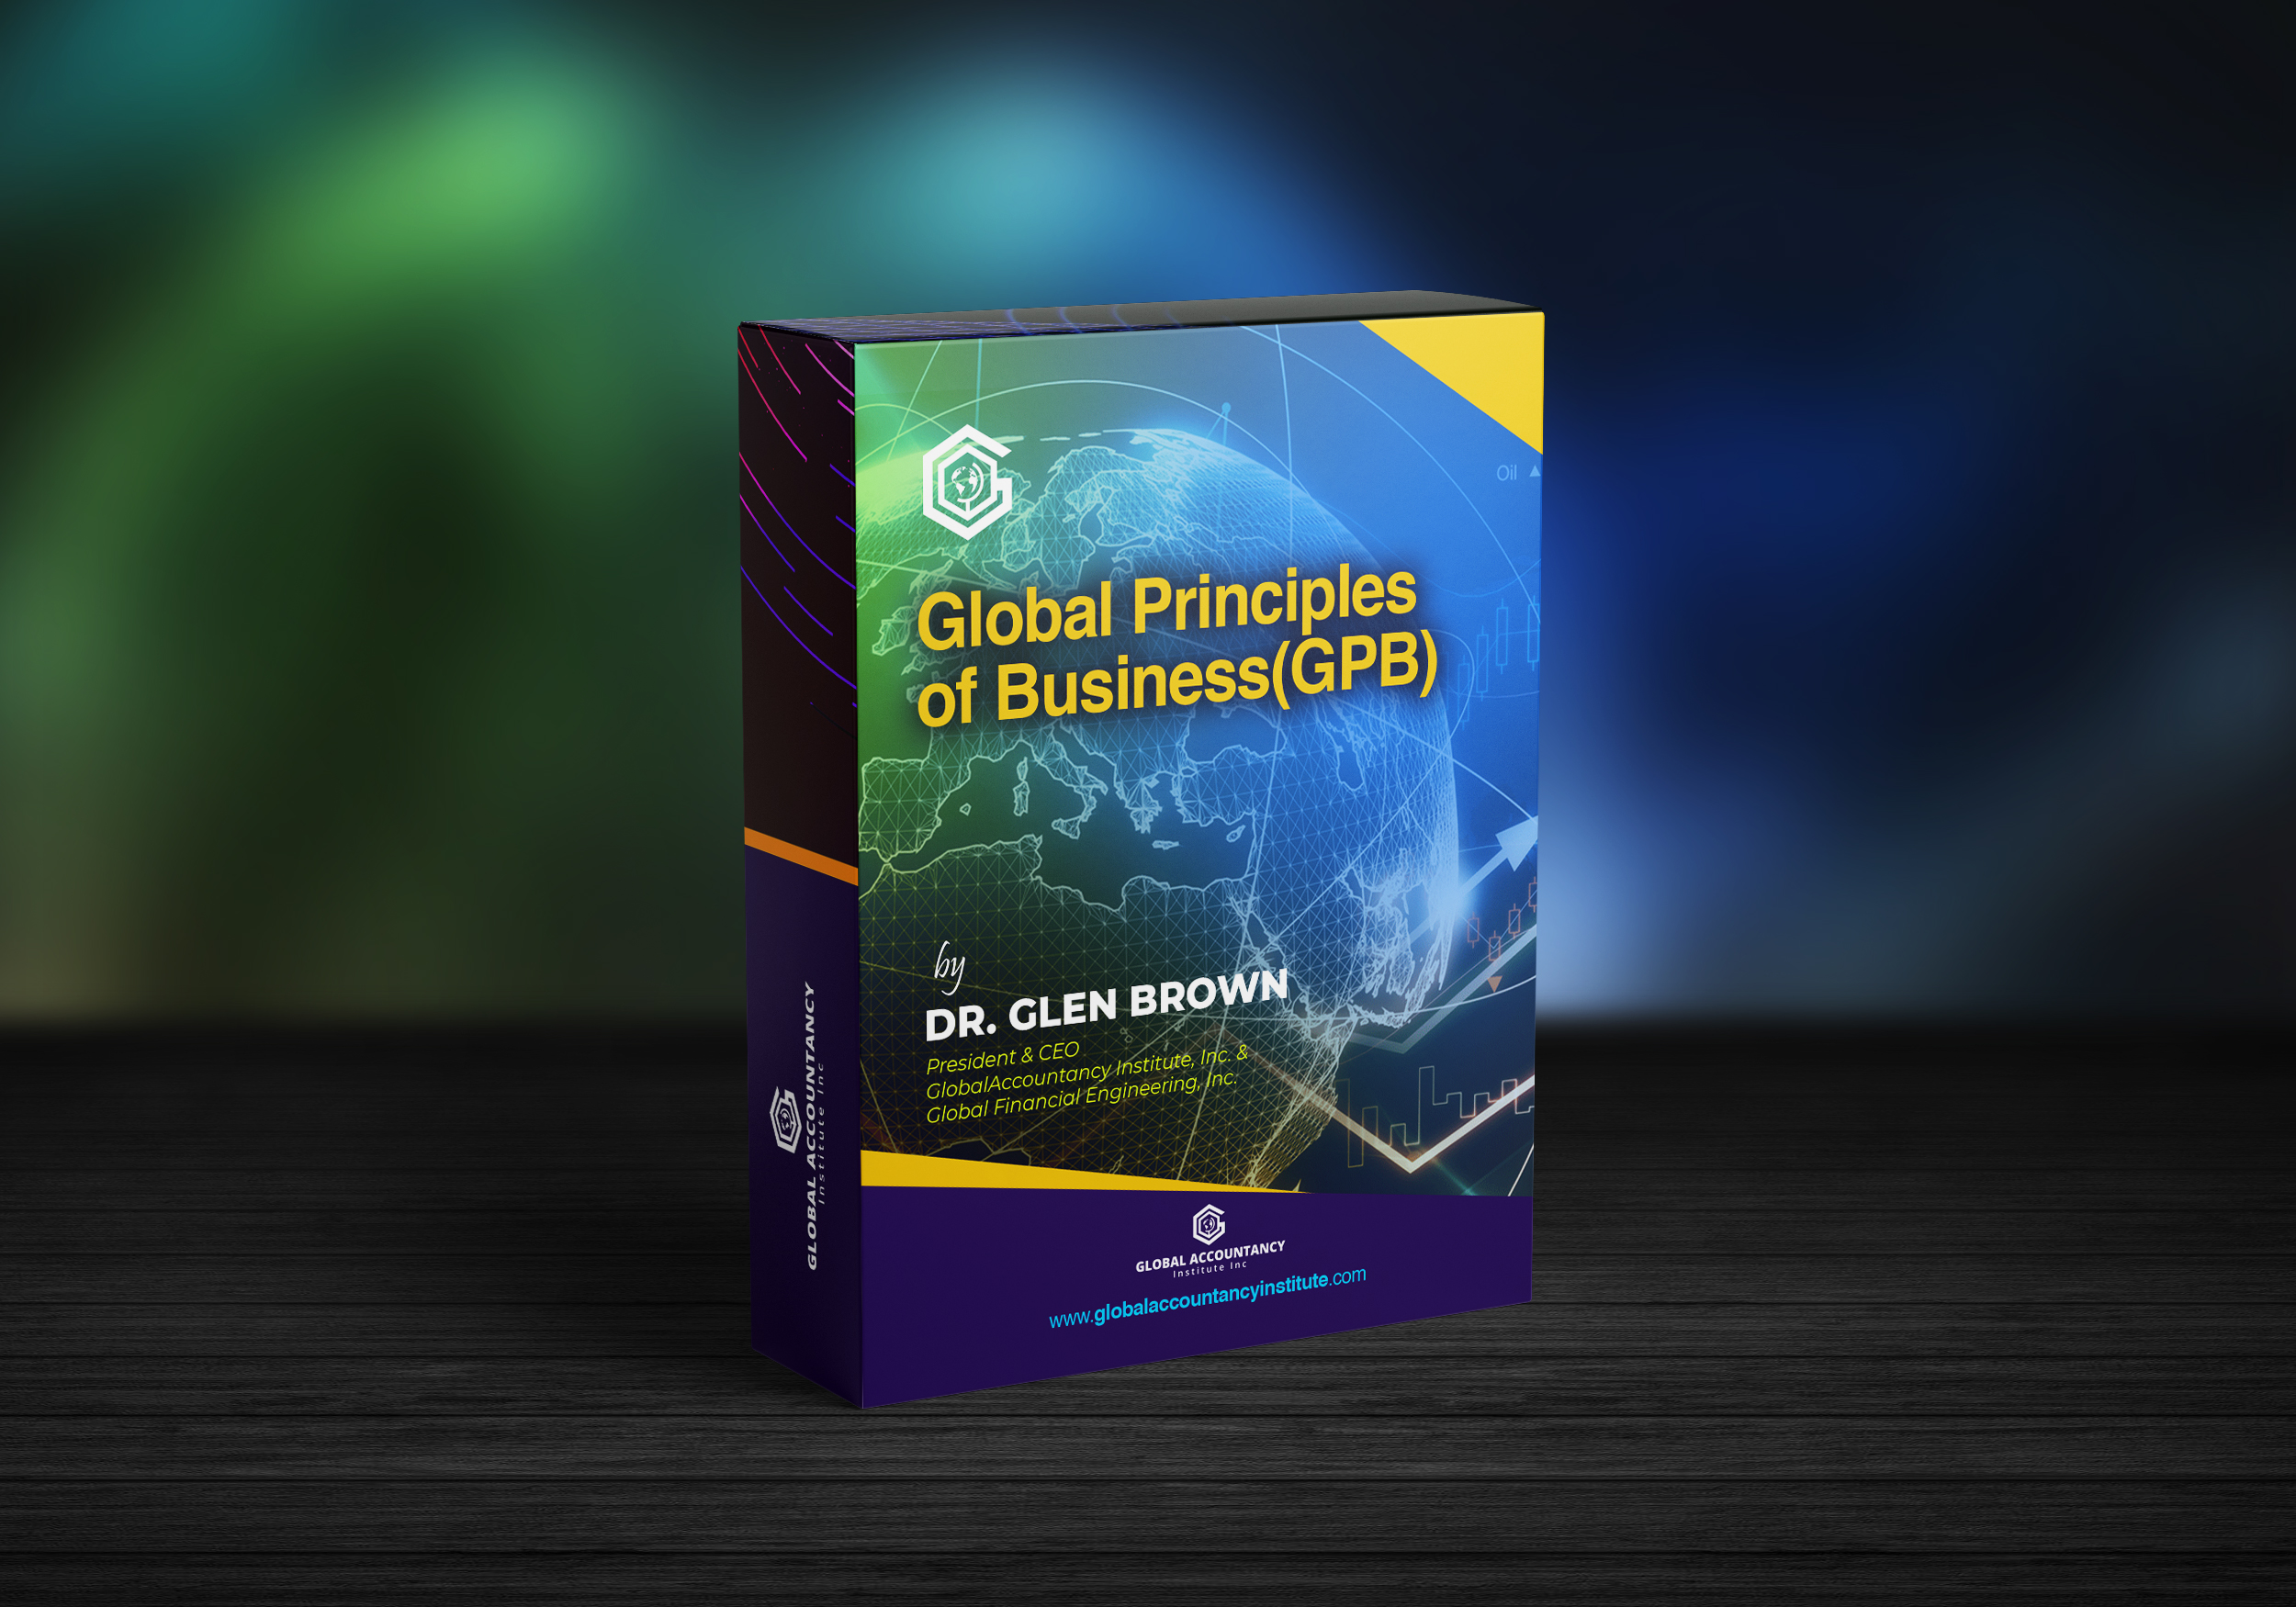 Global Principles of Business (GPB)